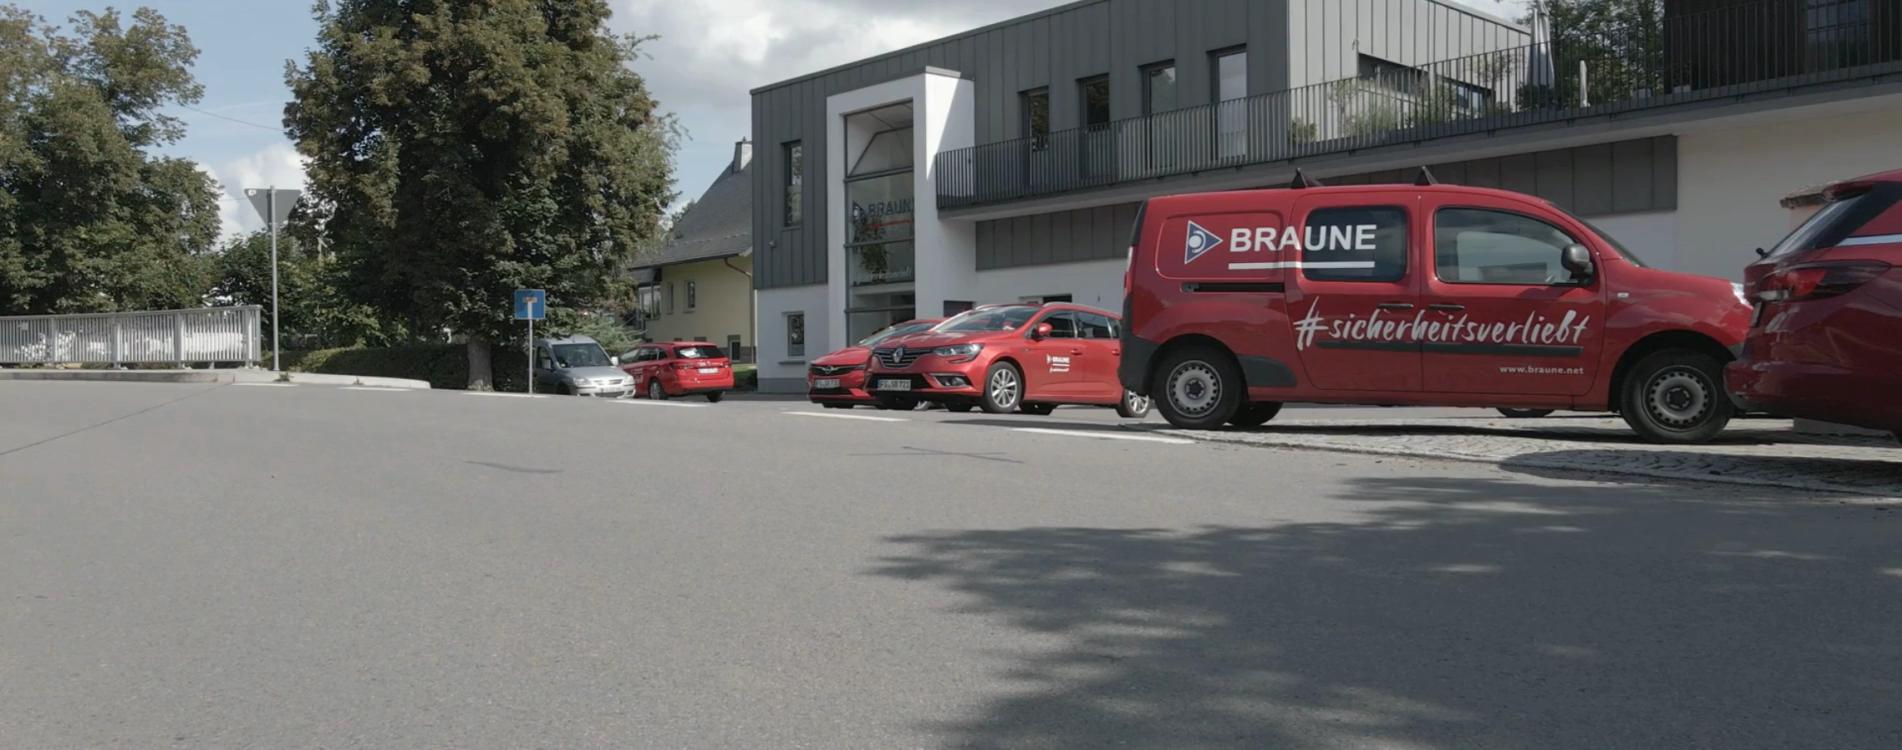 BRAUNE GmbH